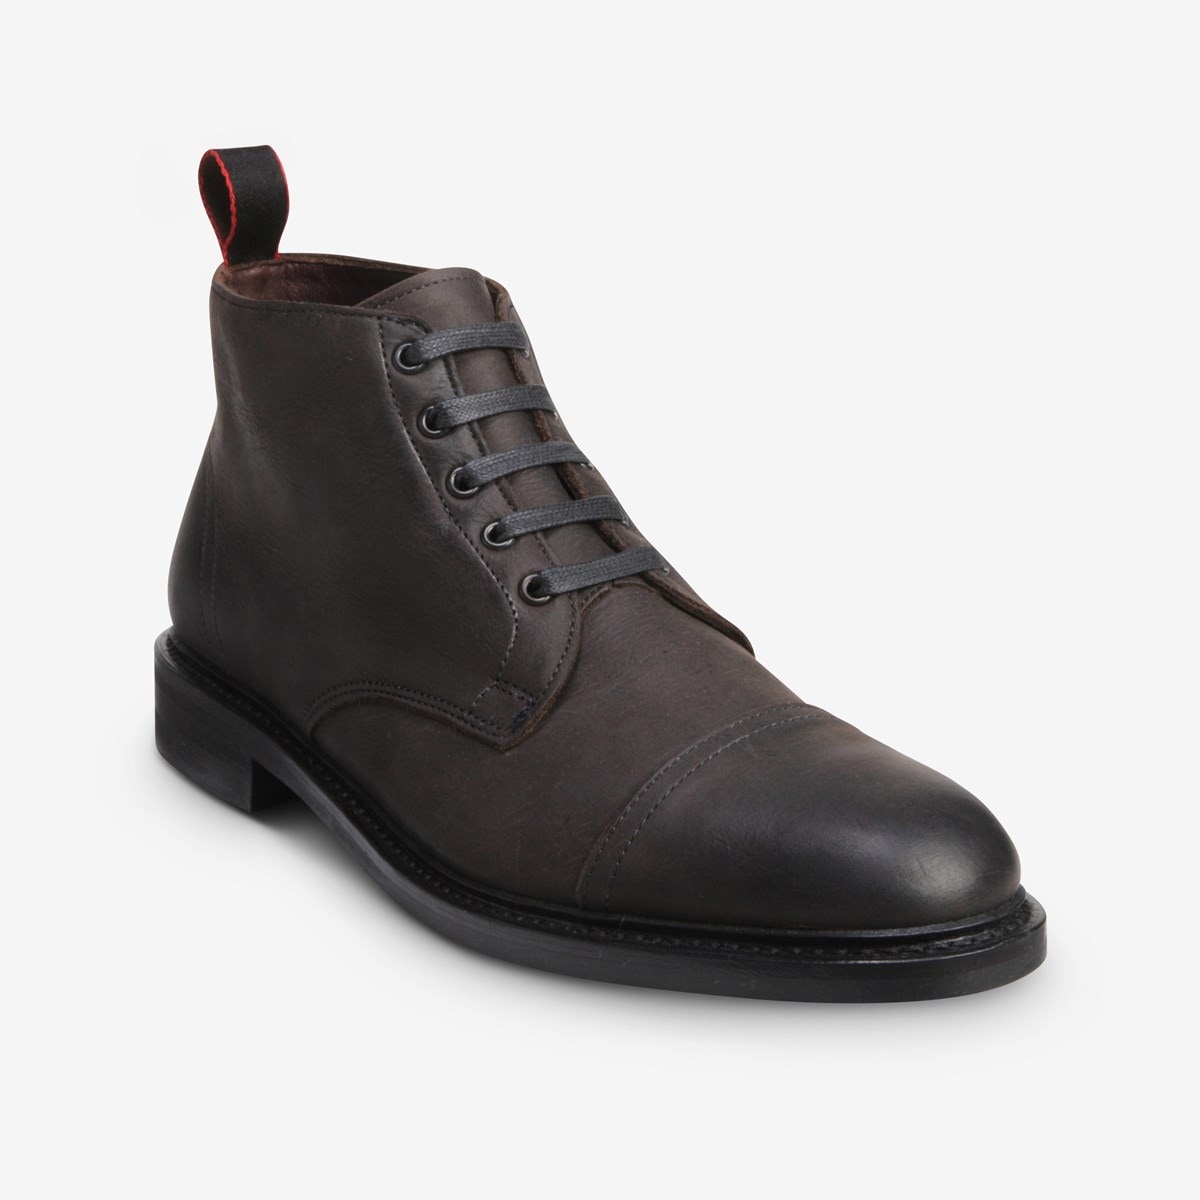 Patton Cap-toe Boot with Dainite Rubber Sole | Men's Boots | Allen Edmonds